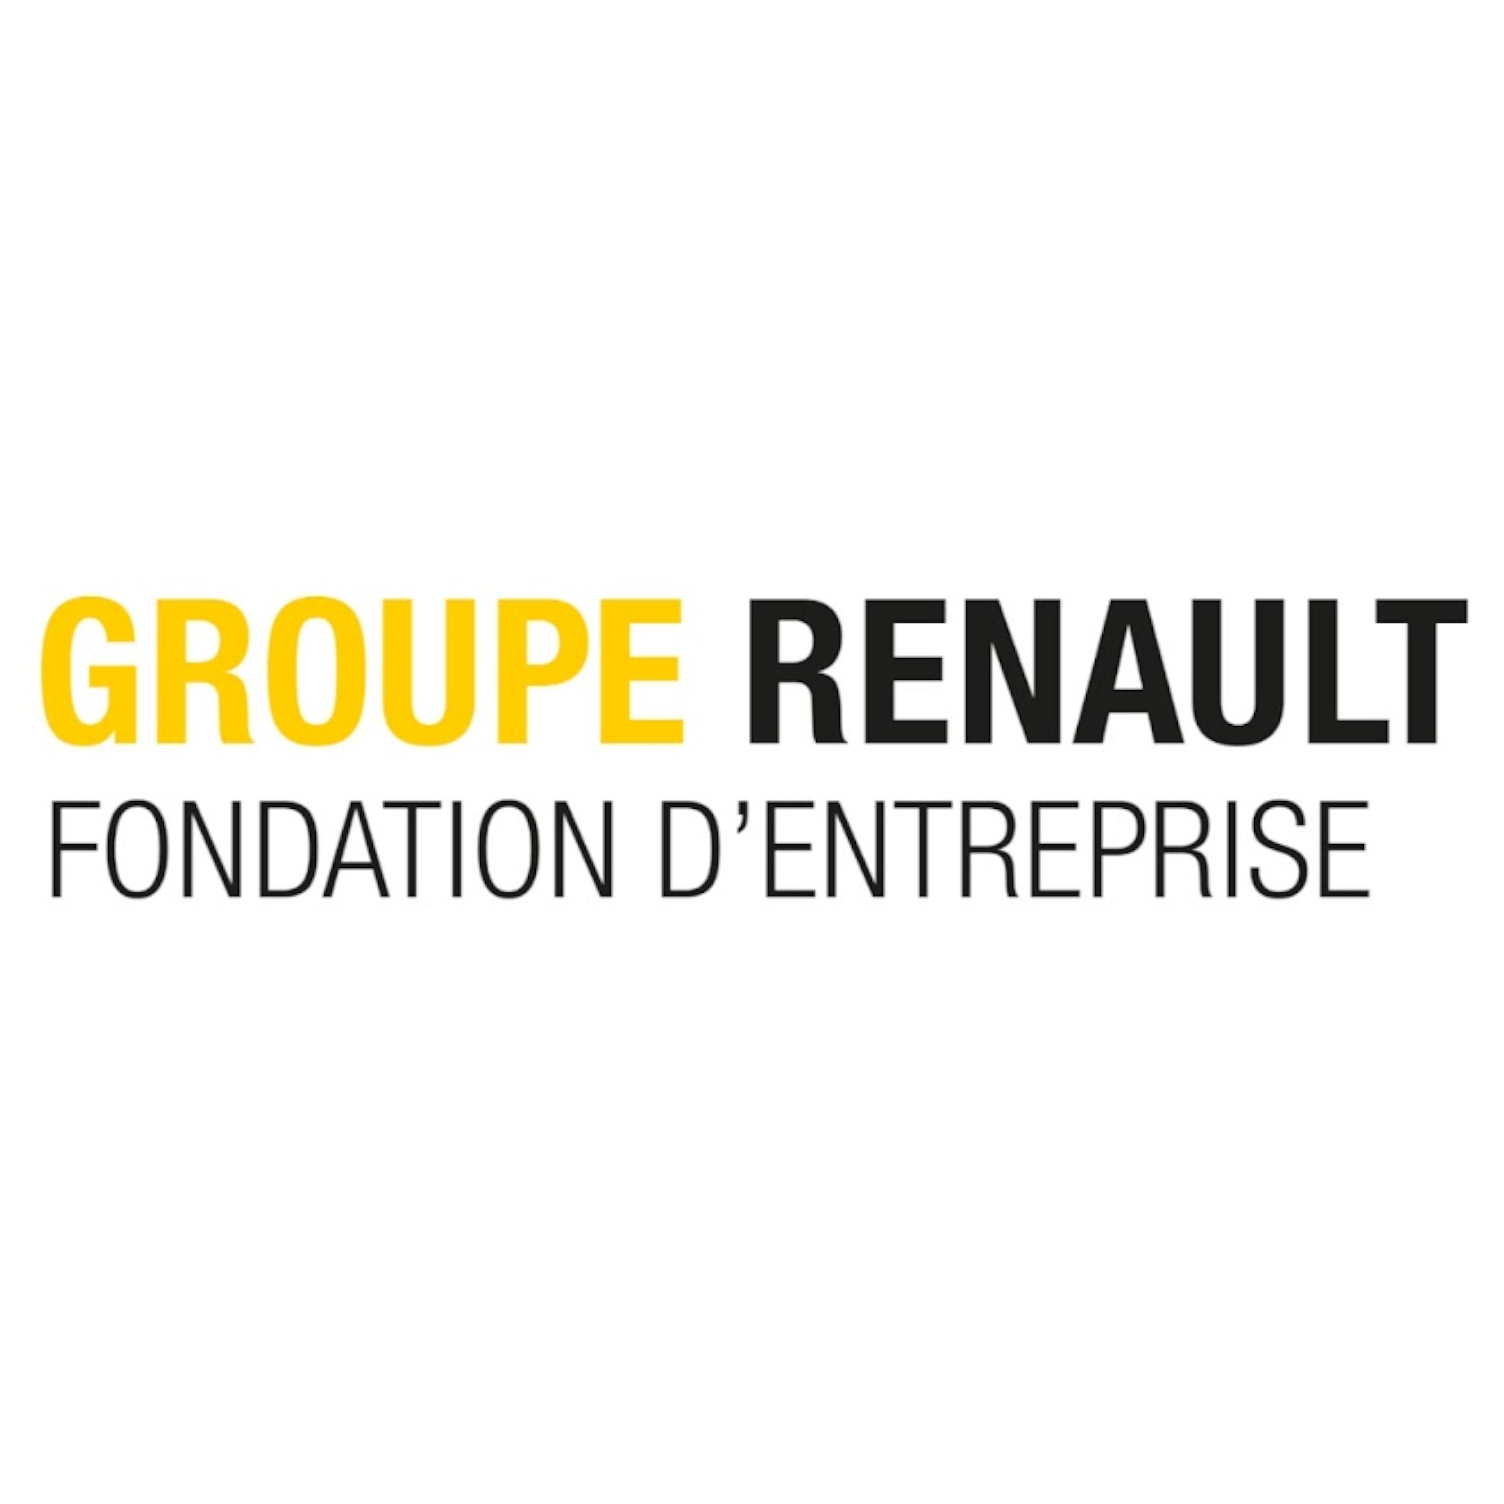 Groupe Renault Fondation d'entreprise